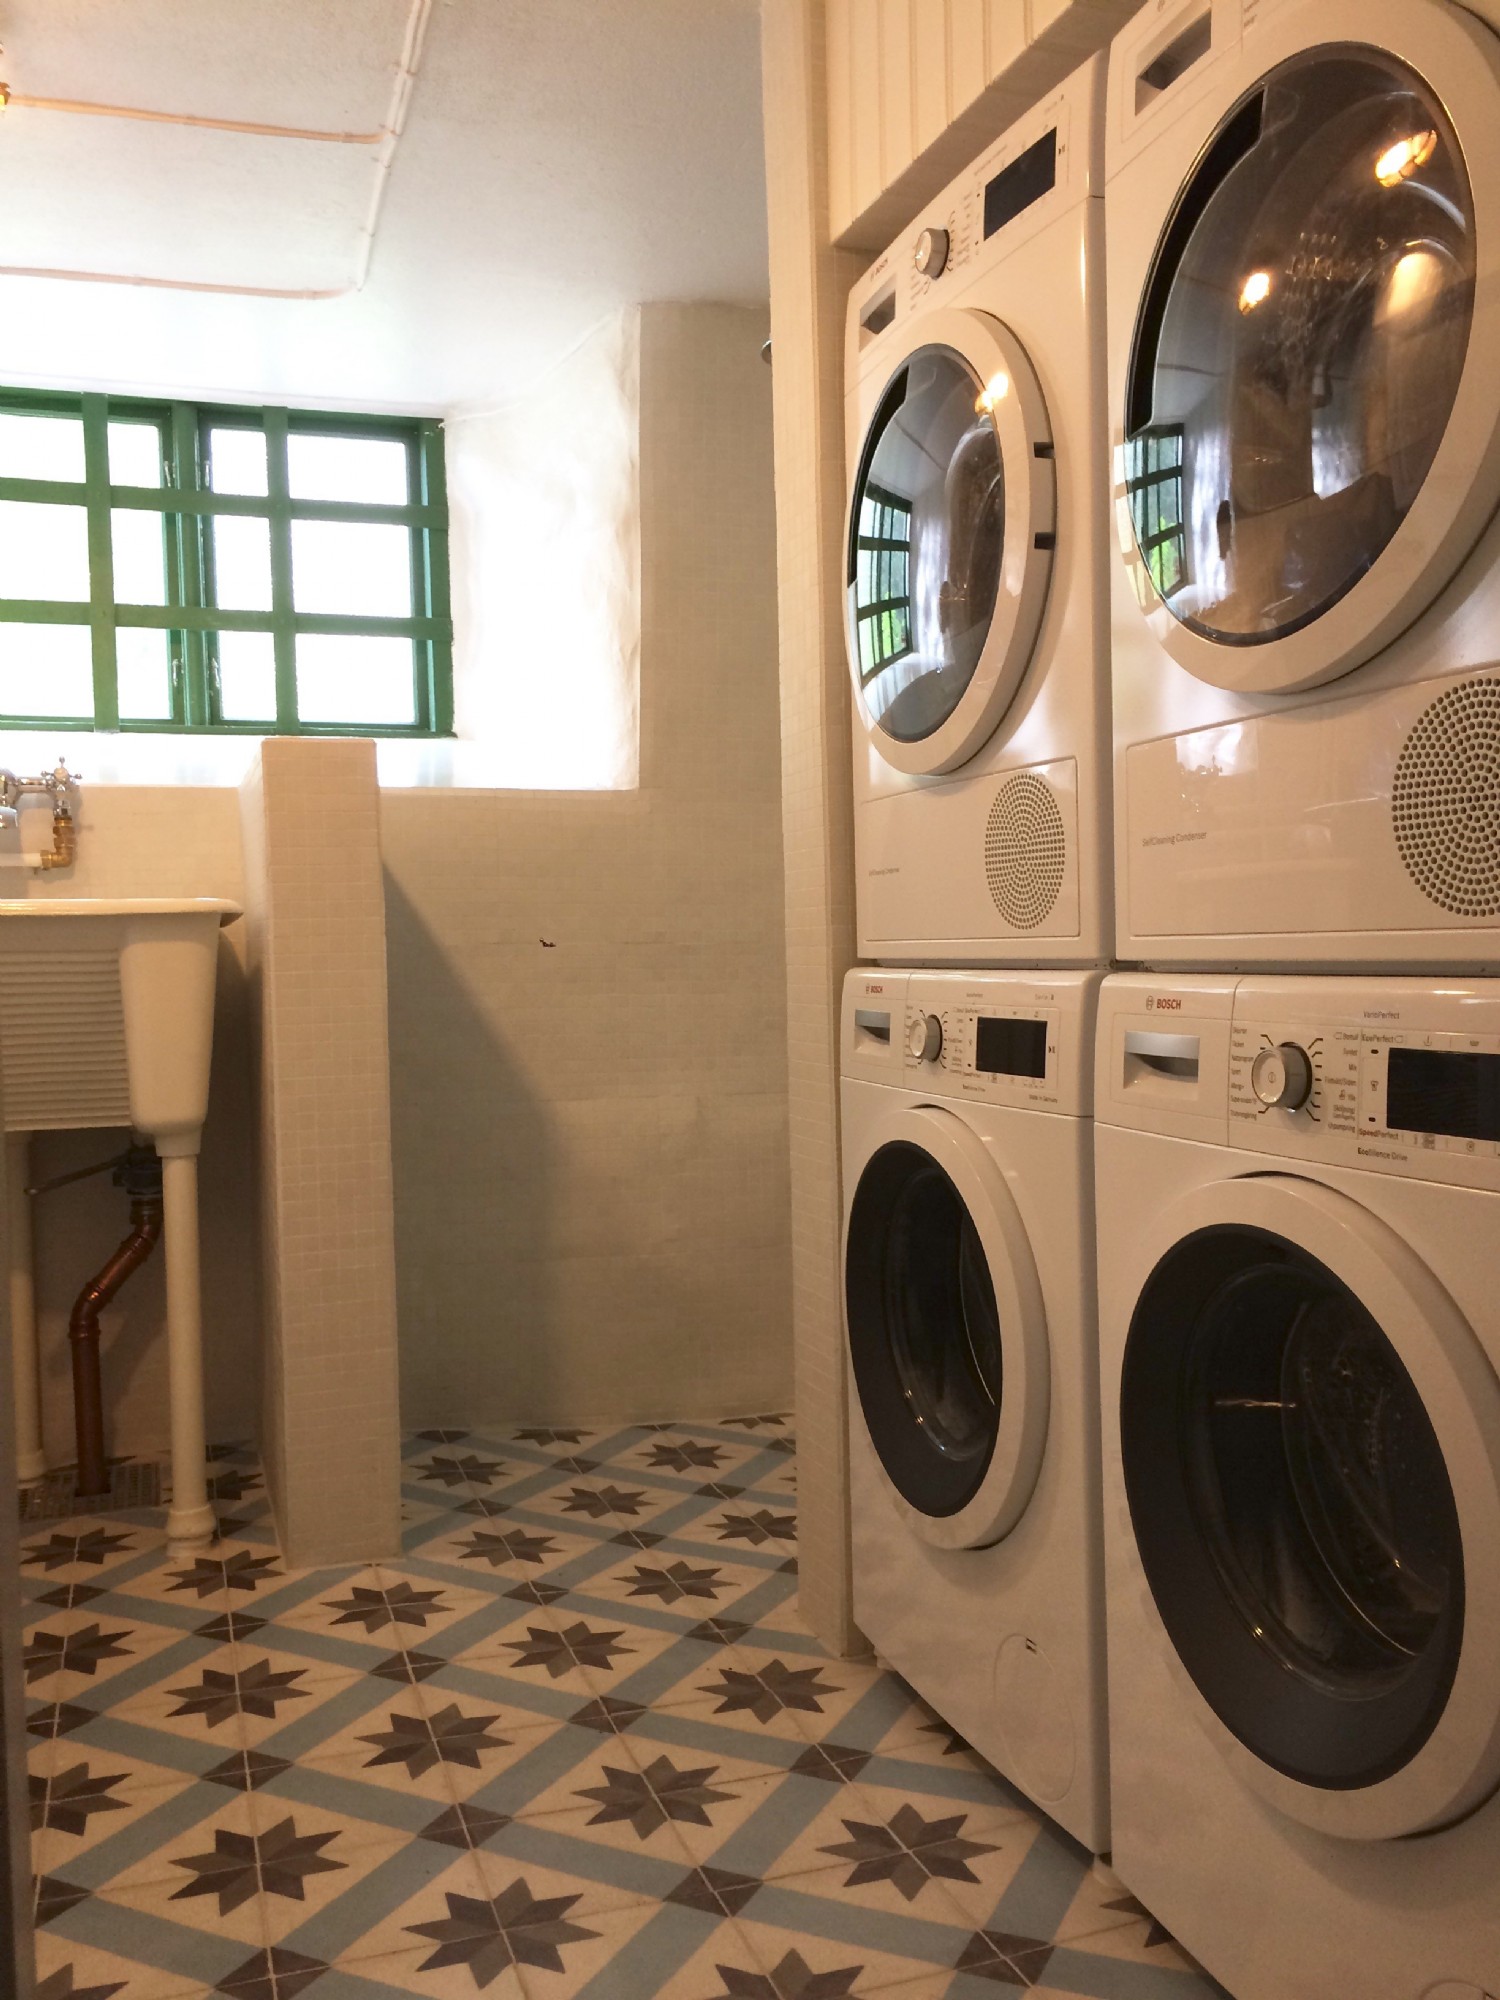 Tvttstuga i kllarvningen/Laundry room at basement floor 